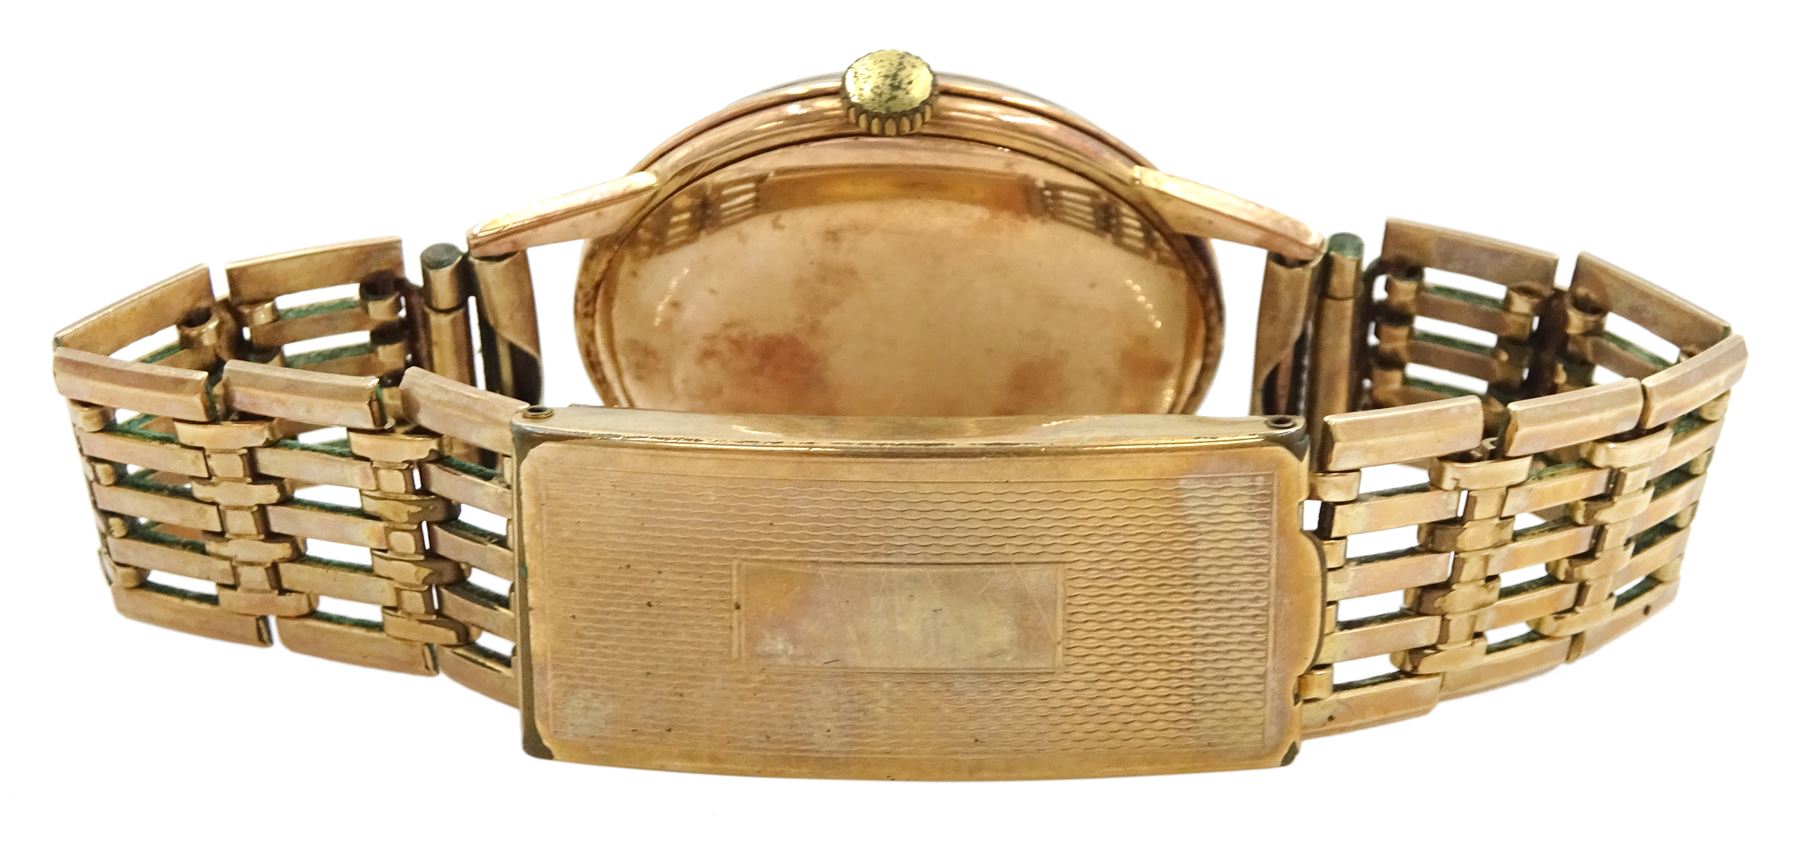 Helvetia gentleman's 14ct gold manual wind wristwatch - Image 2 of 2